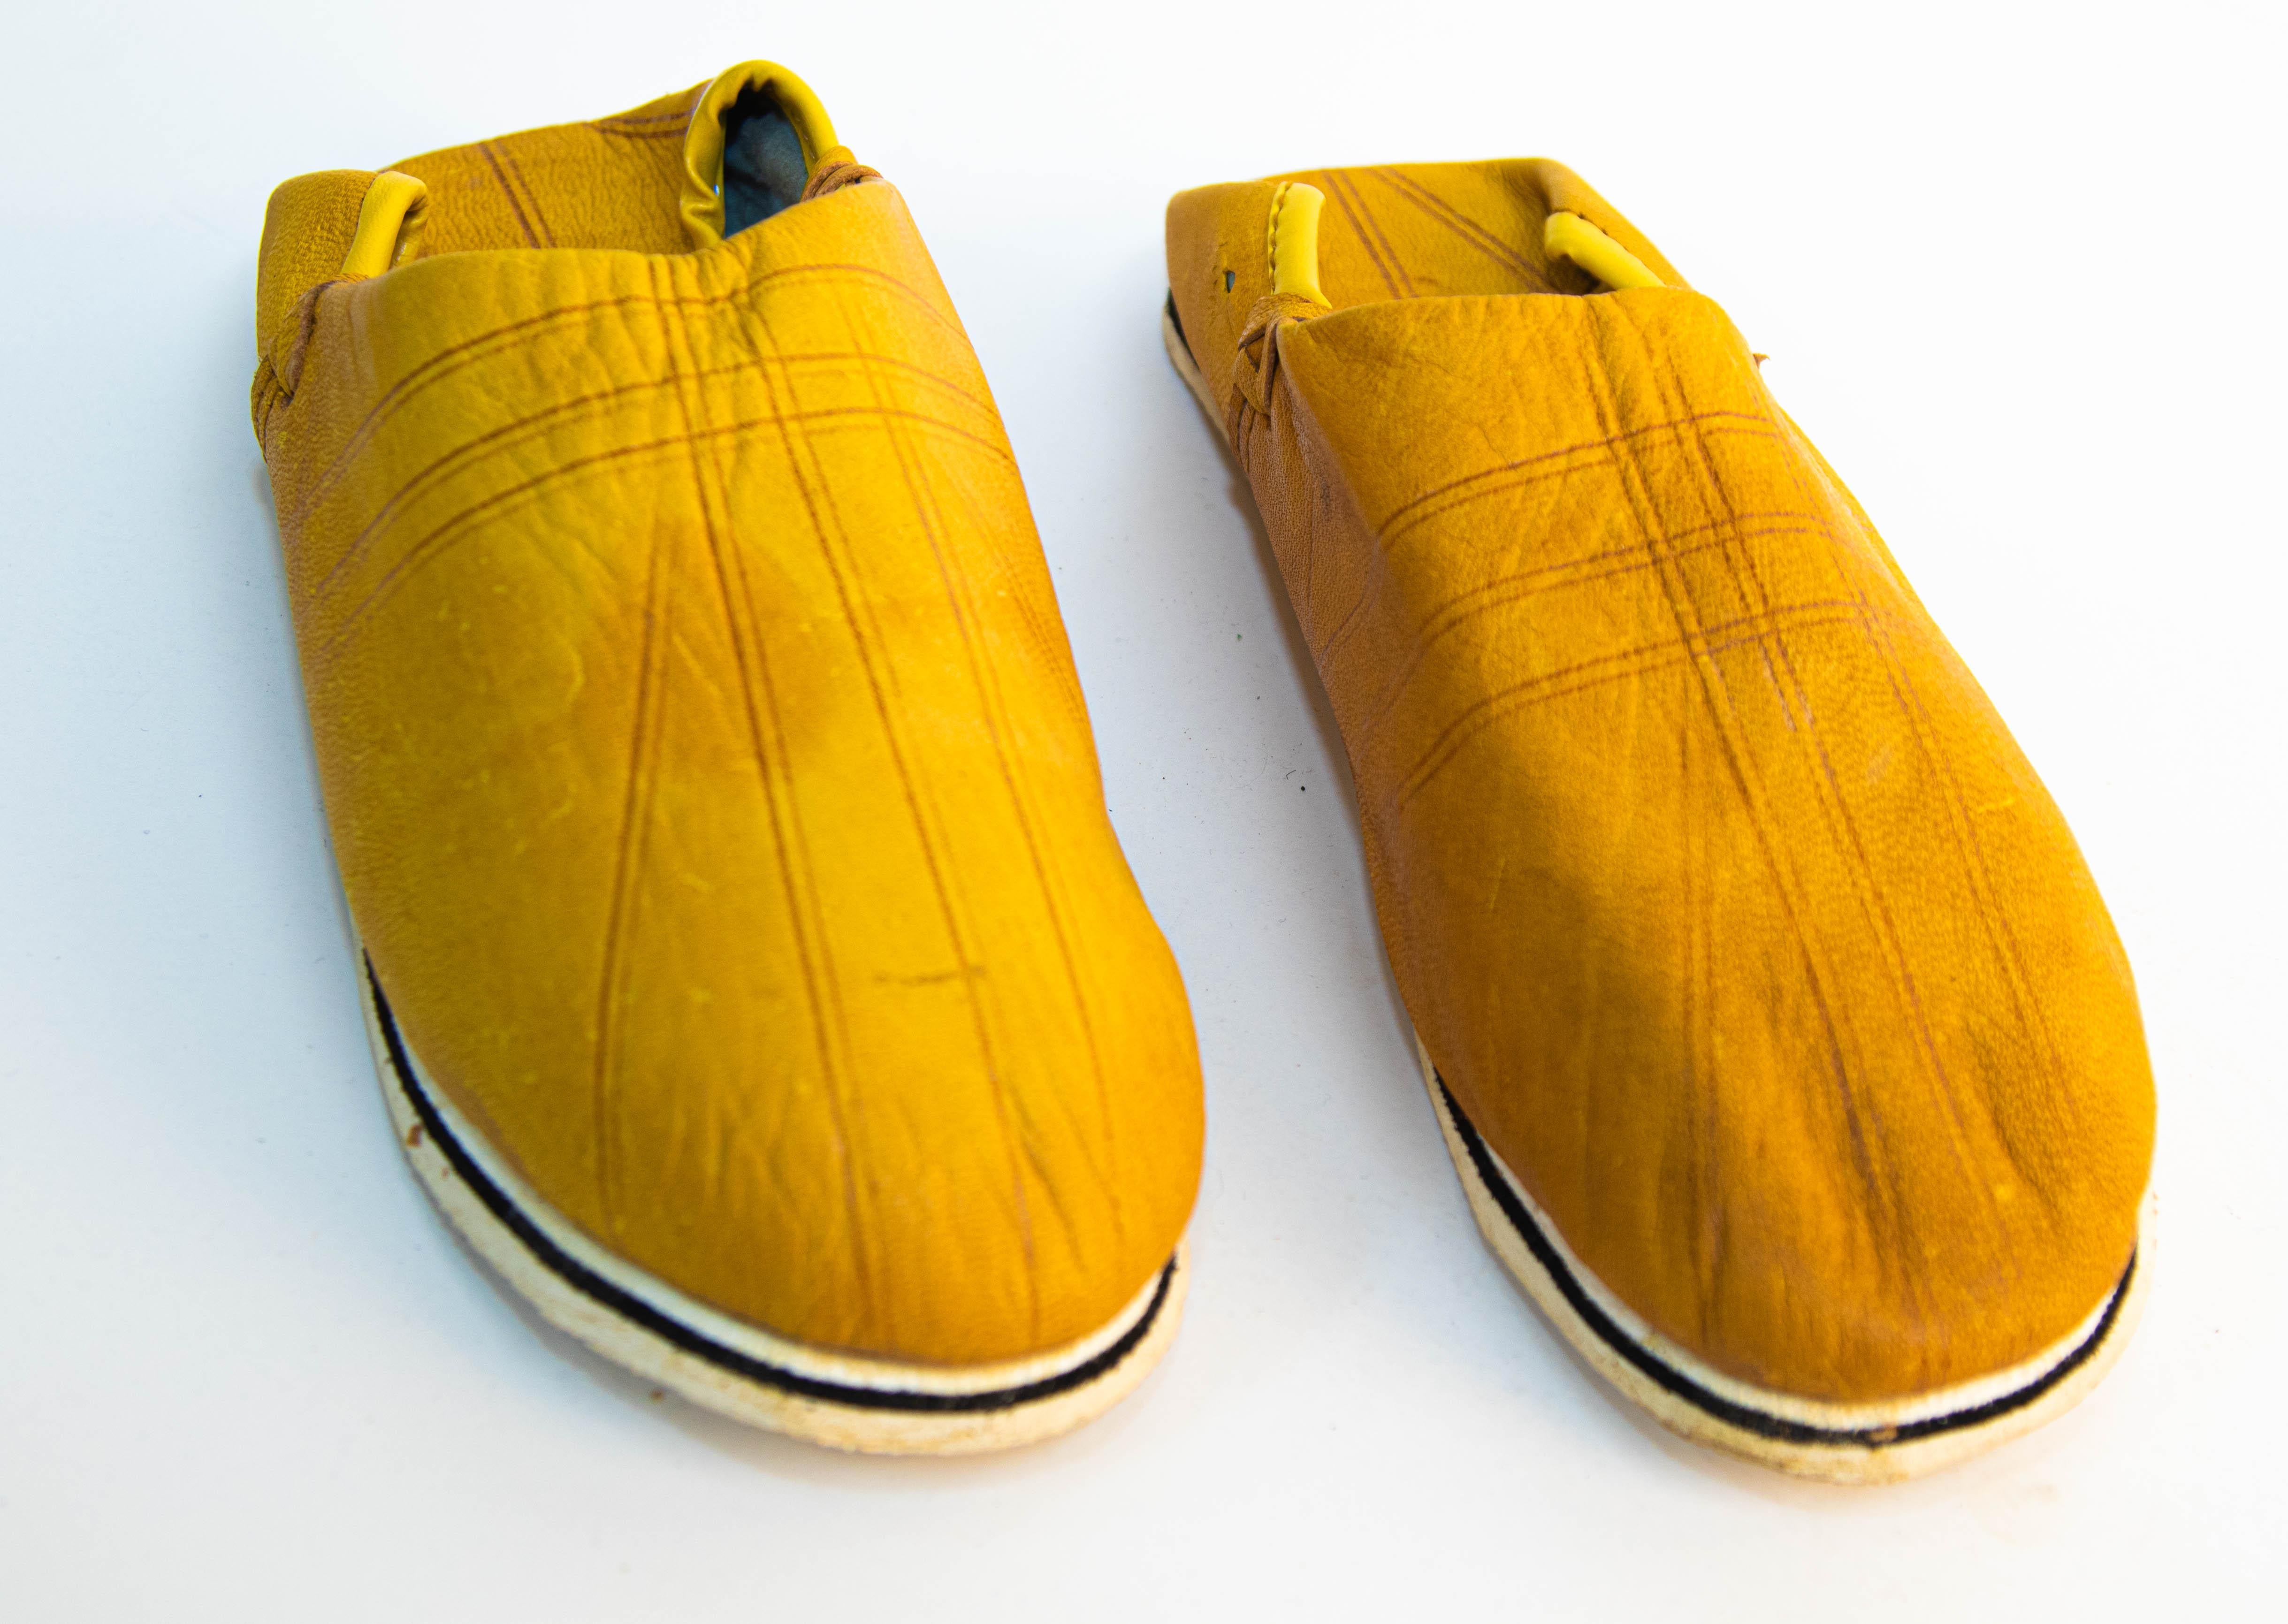 Marokkanische ethnische gelbe Lederpantoffeln sind handgefertigt.
Handgefertigt in Fez, Marokko.
Marokkanische Schuhe für das Schwimmbad oder den Strand, gerade rechtzeitig für den Sommer.
Abmessungen.
Die Sohle ist 9,5 in. x 3,5 in